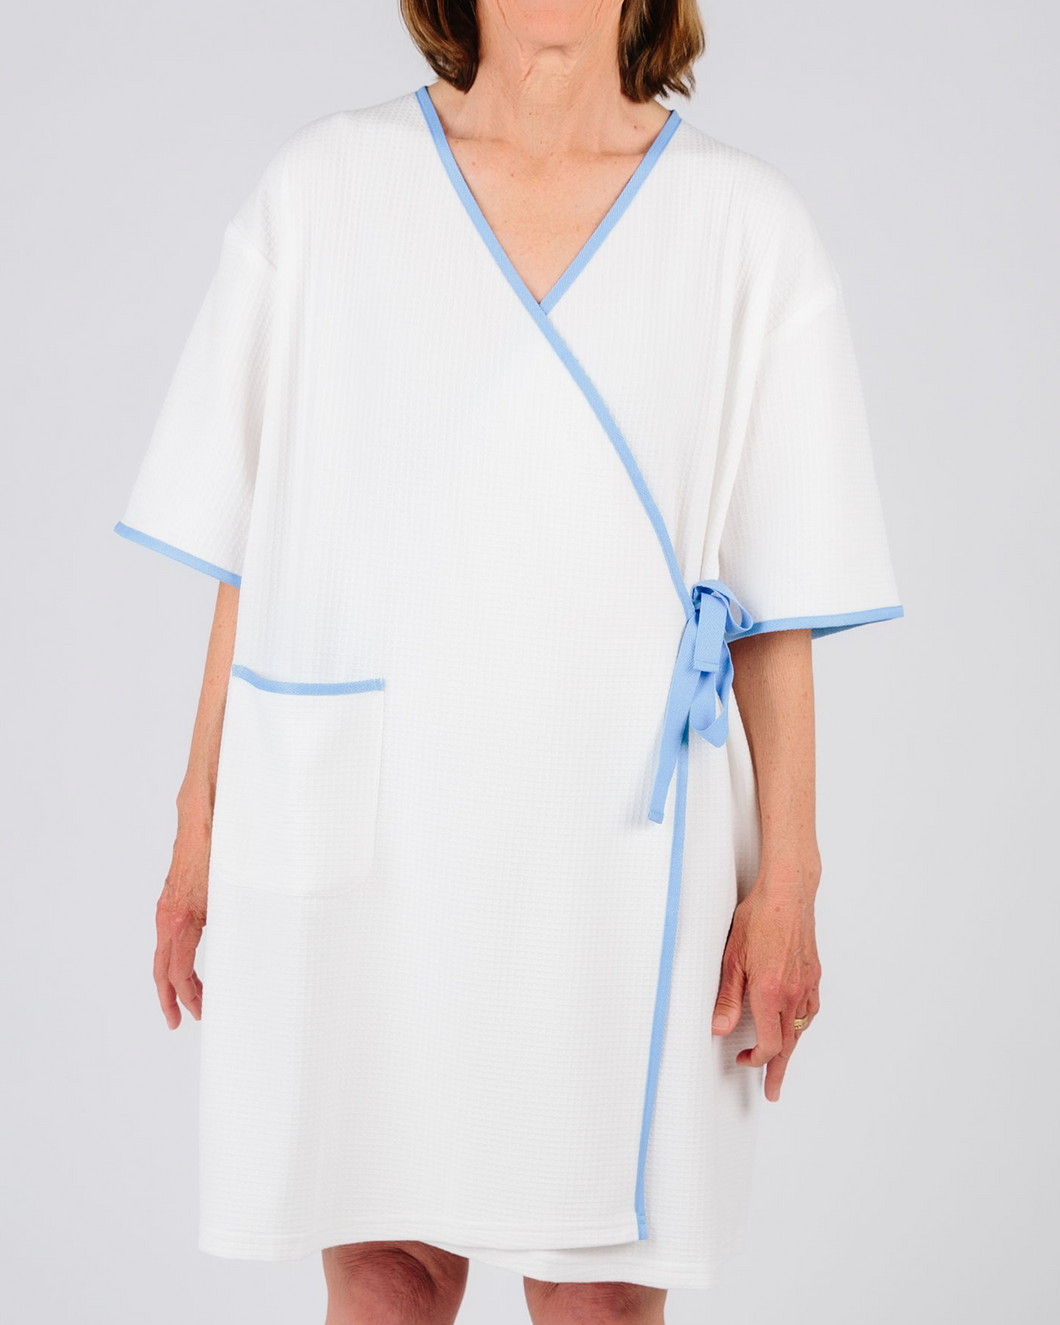 Women's Regular Size Hospital Gowns